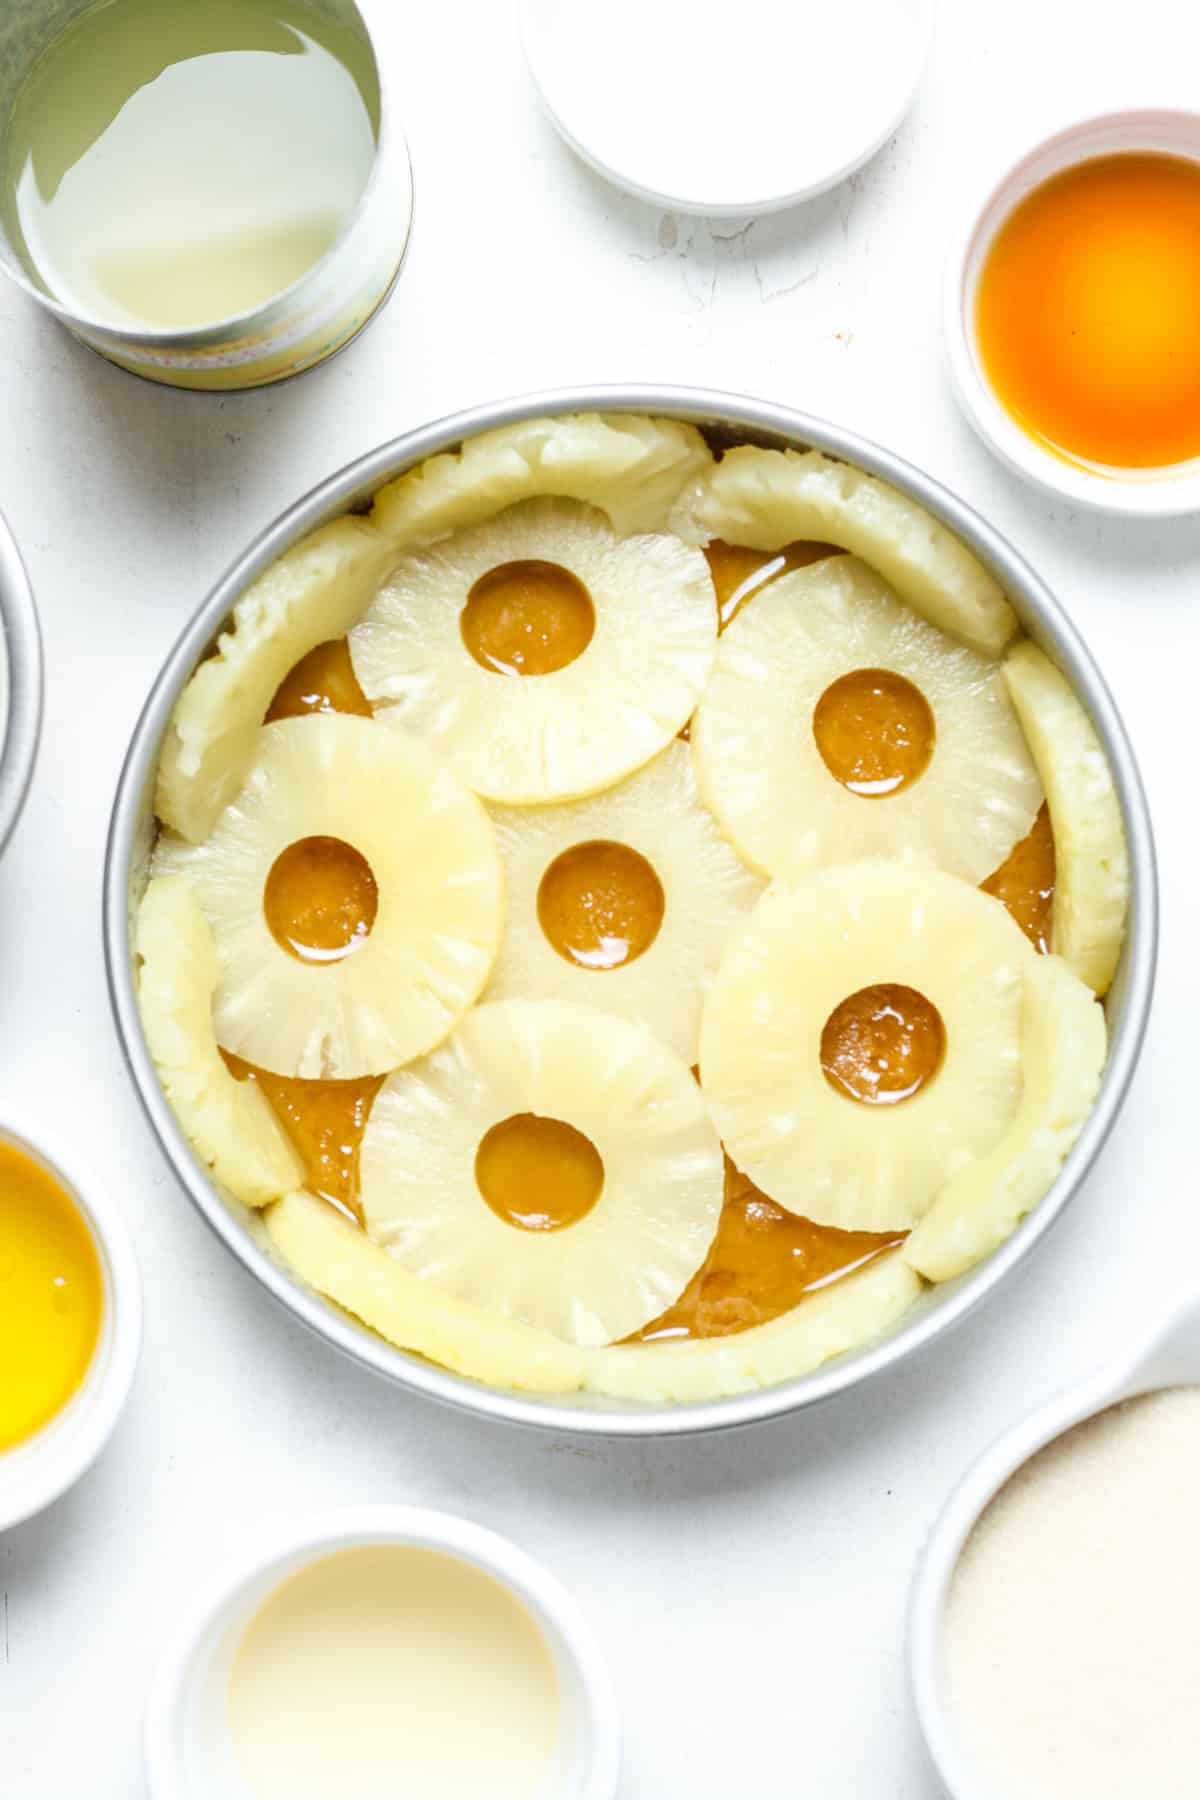 Pineapple rings in pan